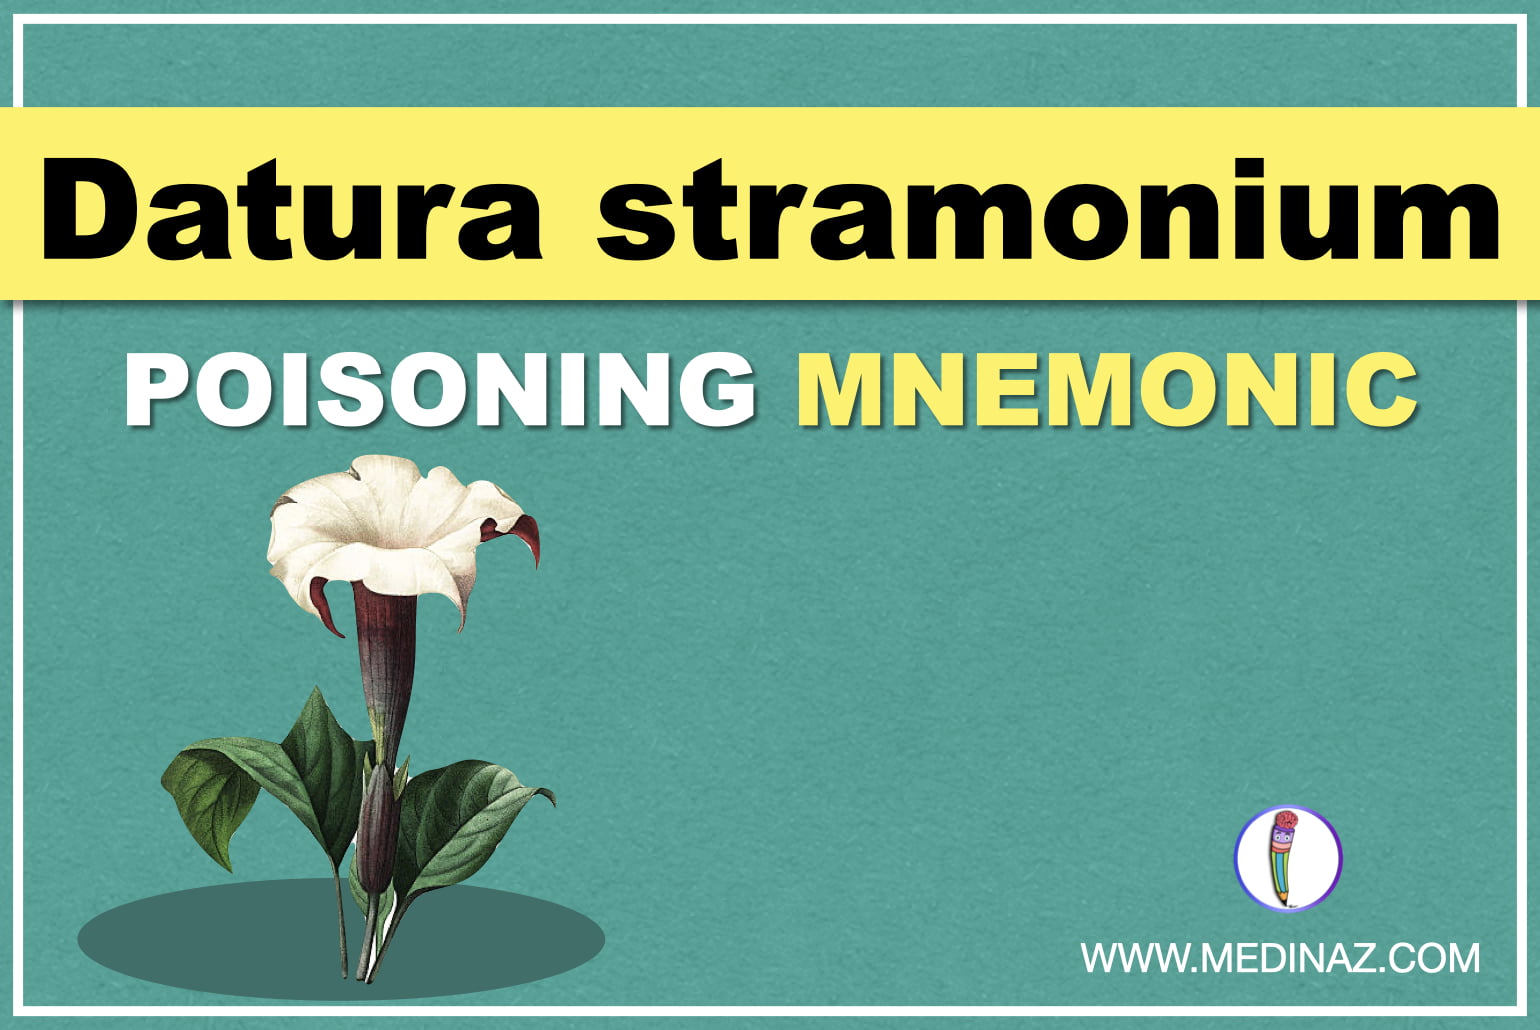 Datura stramonium poisoning mnemonic